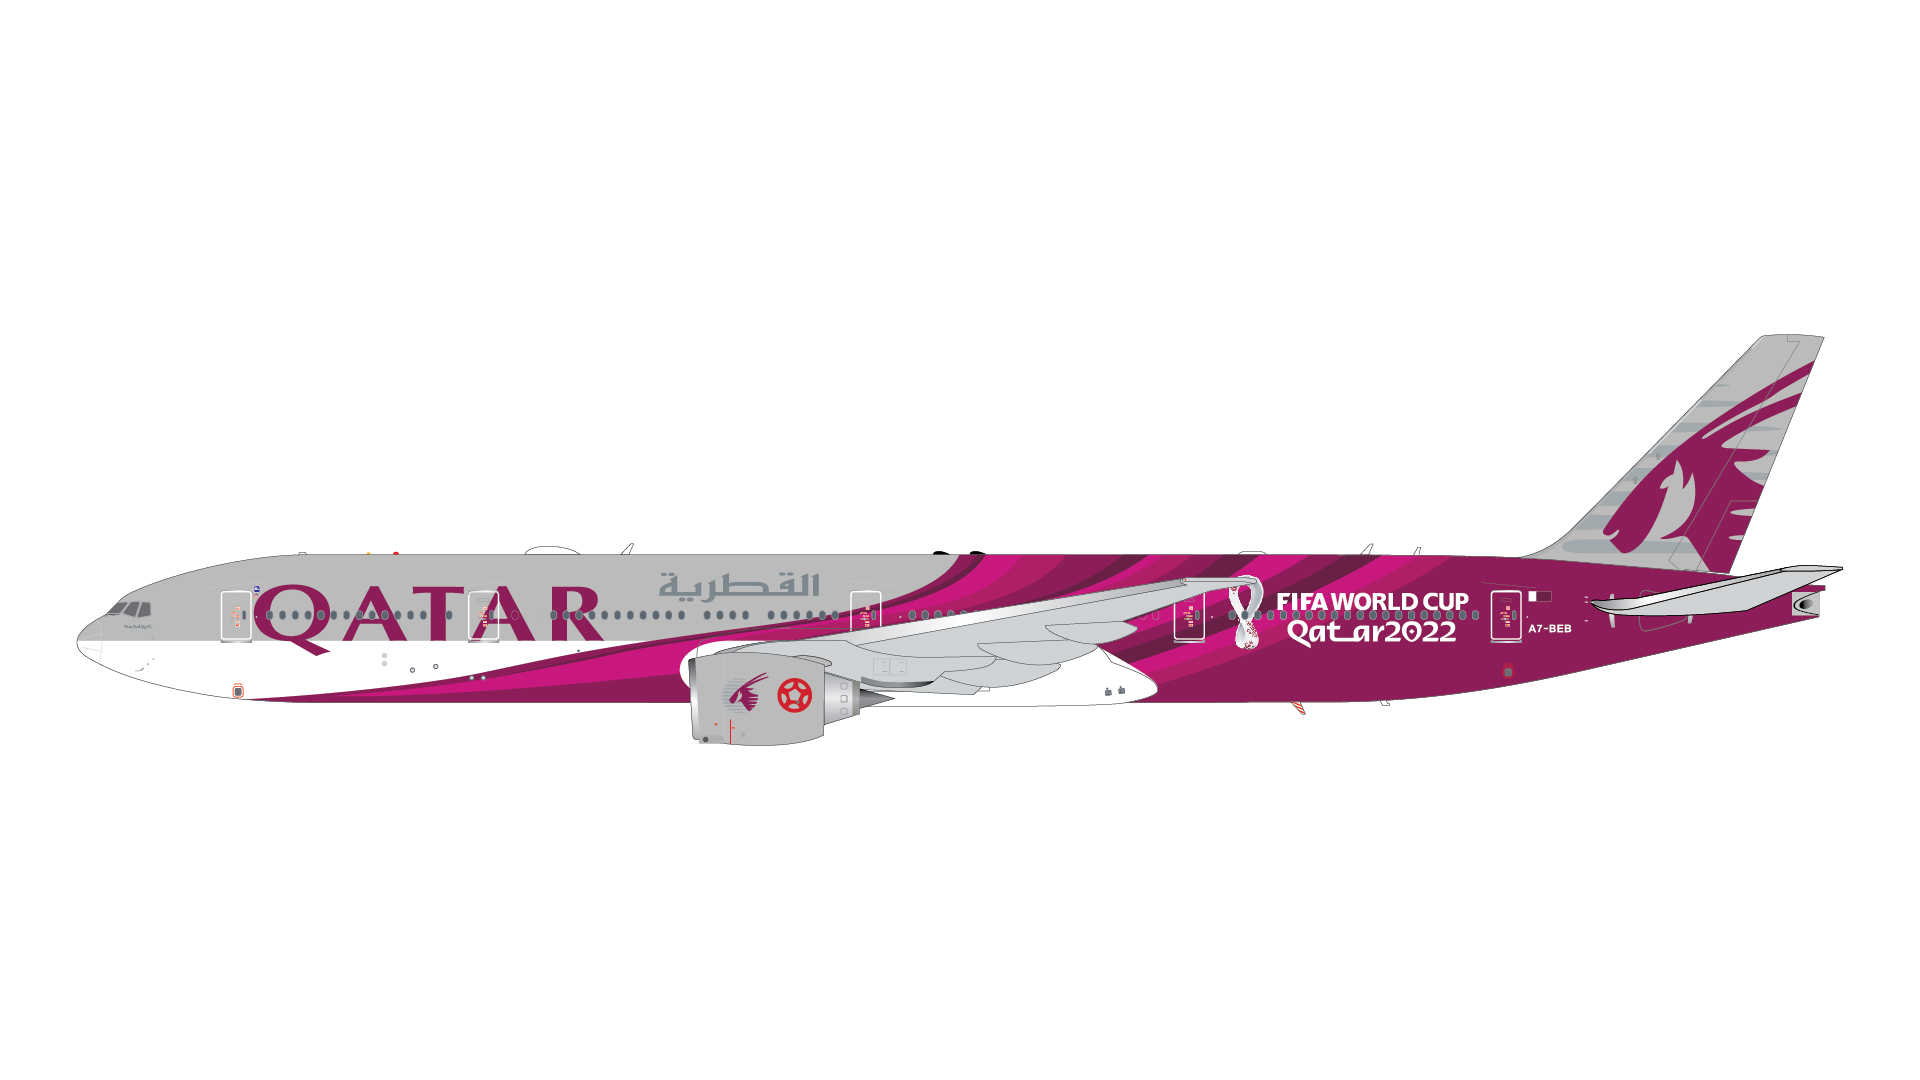 Qatar Airways Boeing 777-300ER "Qatar FIFA World Cup 2022" Reg.: A7-BEB